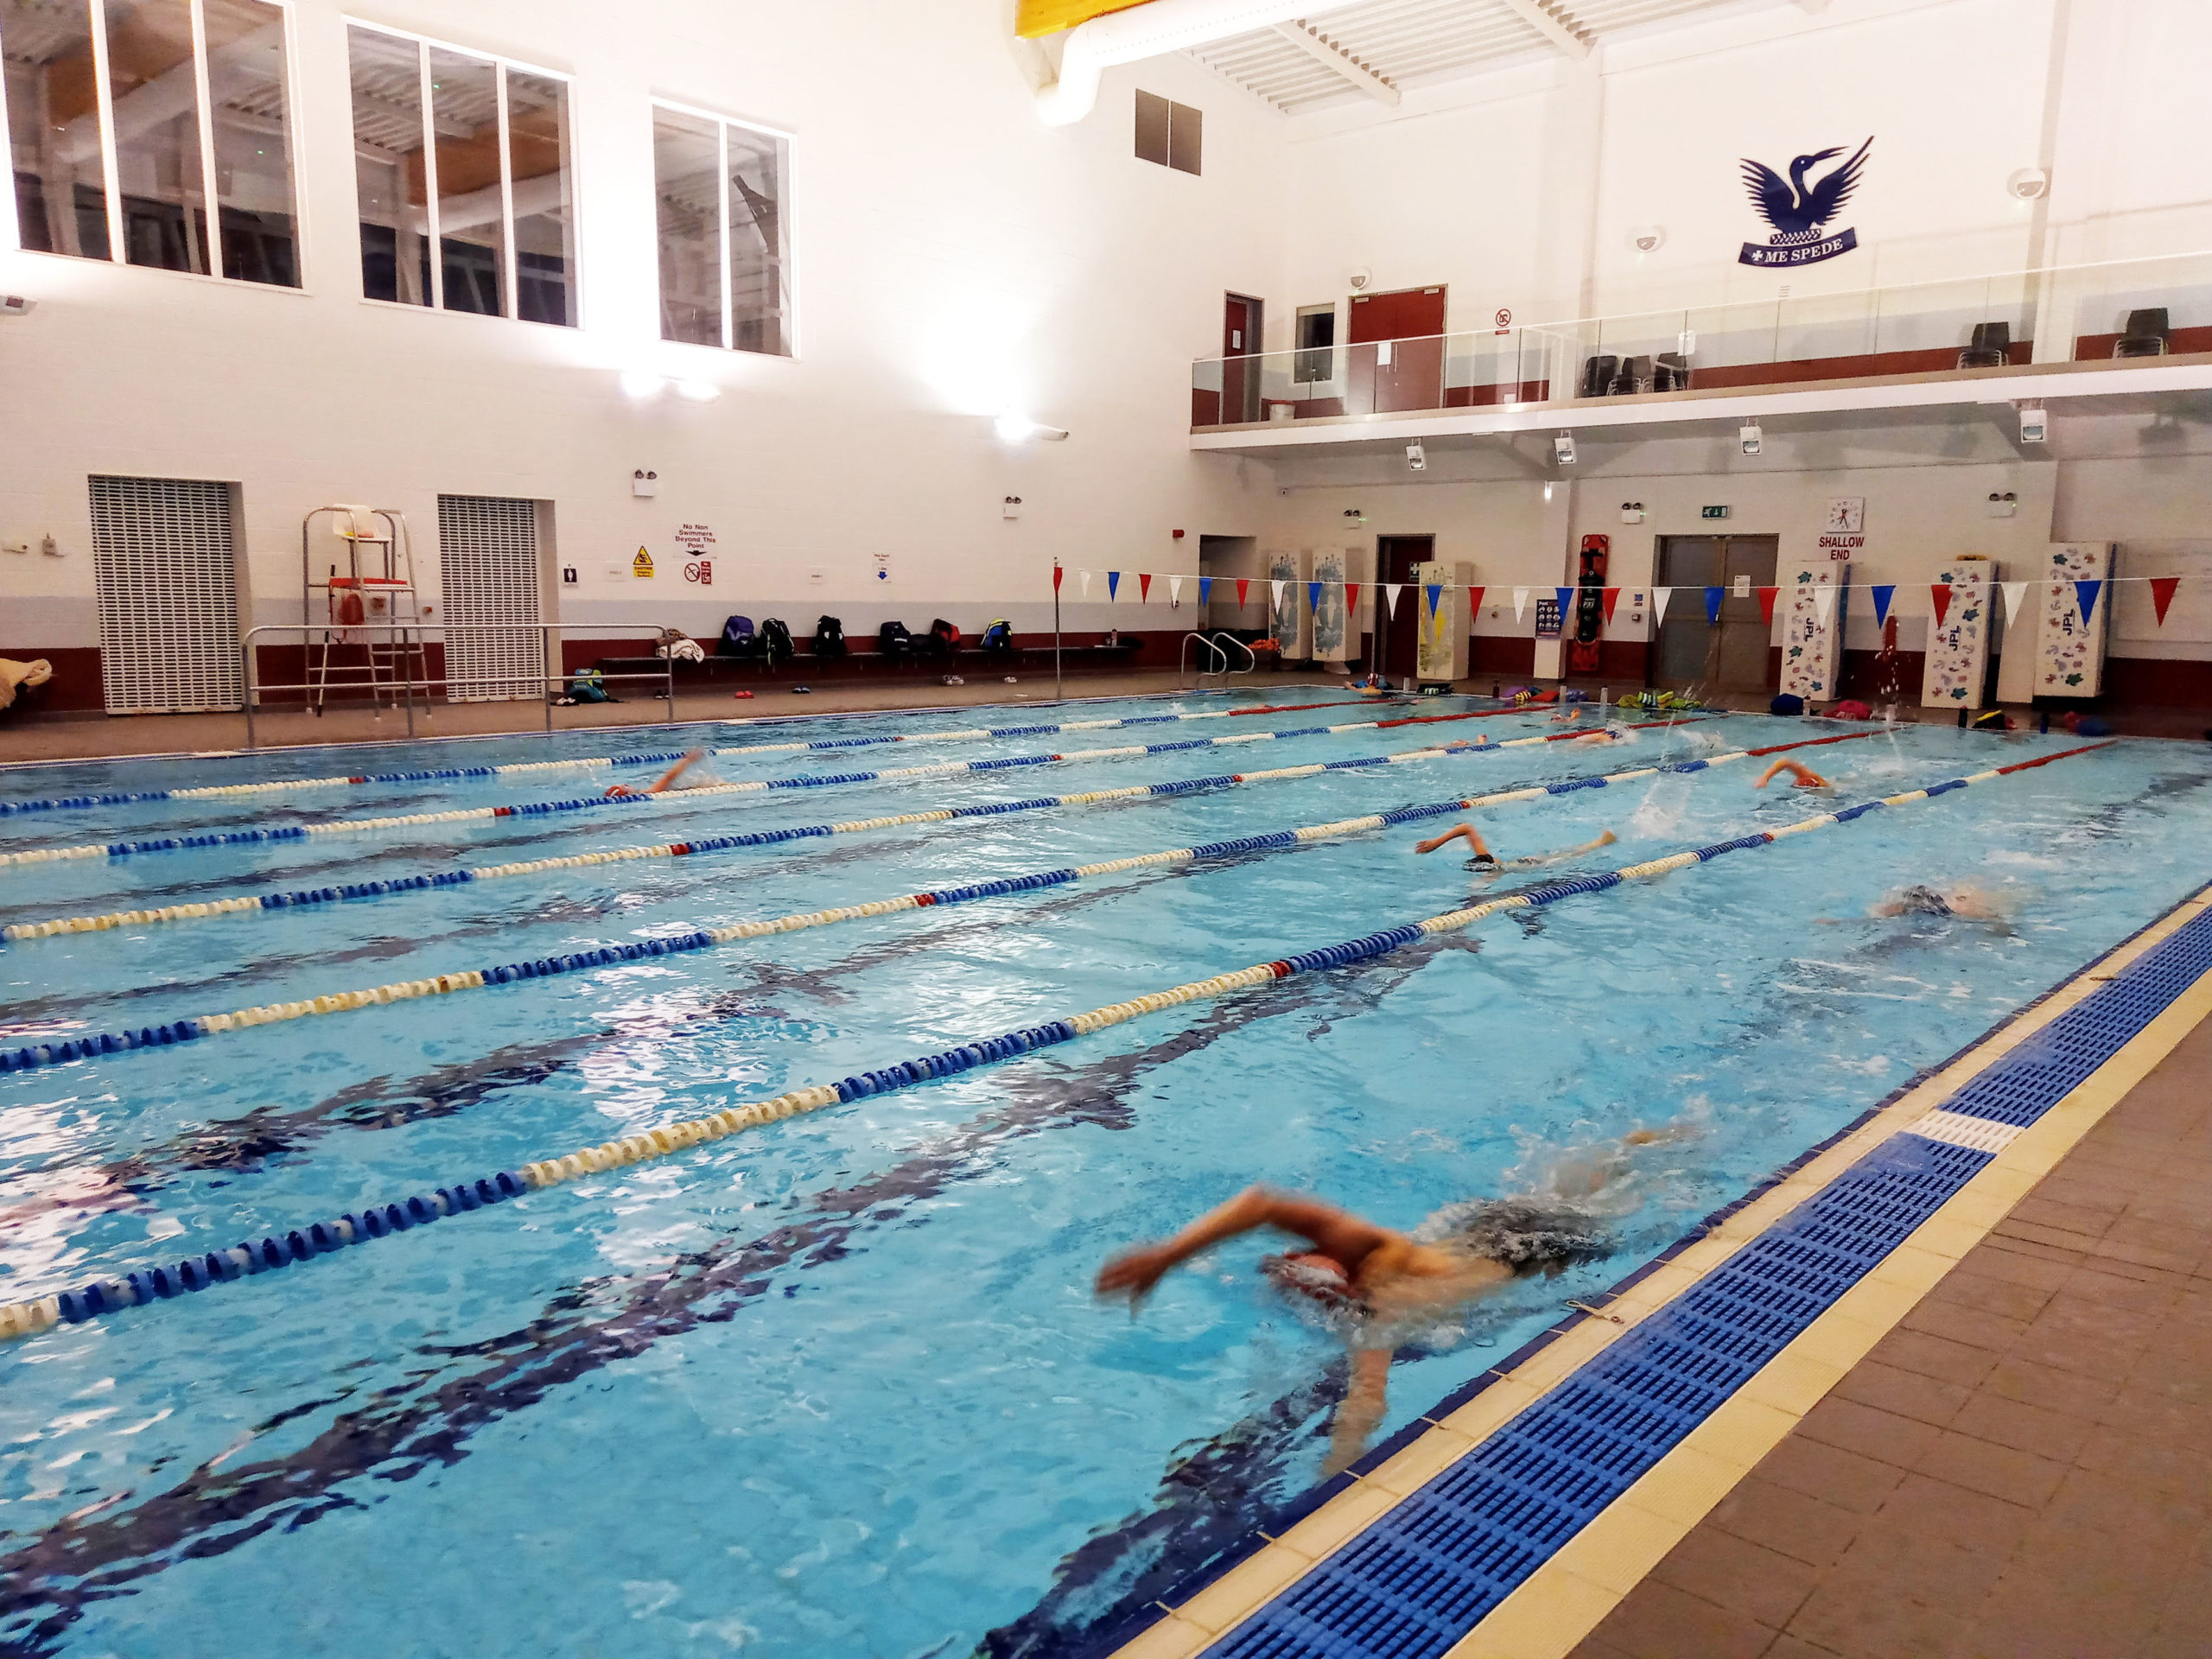 Deepings Swim Club moves to Stamford